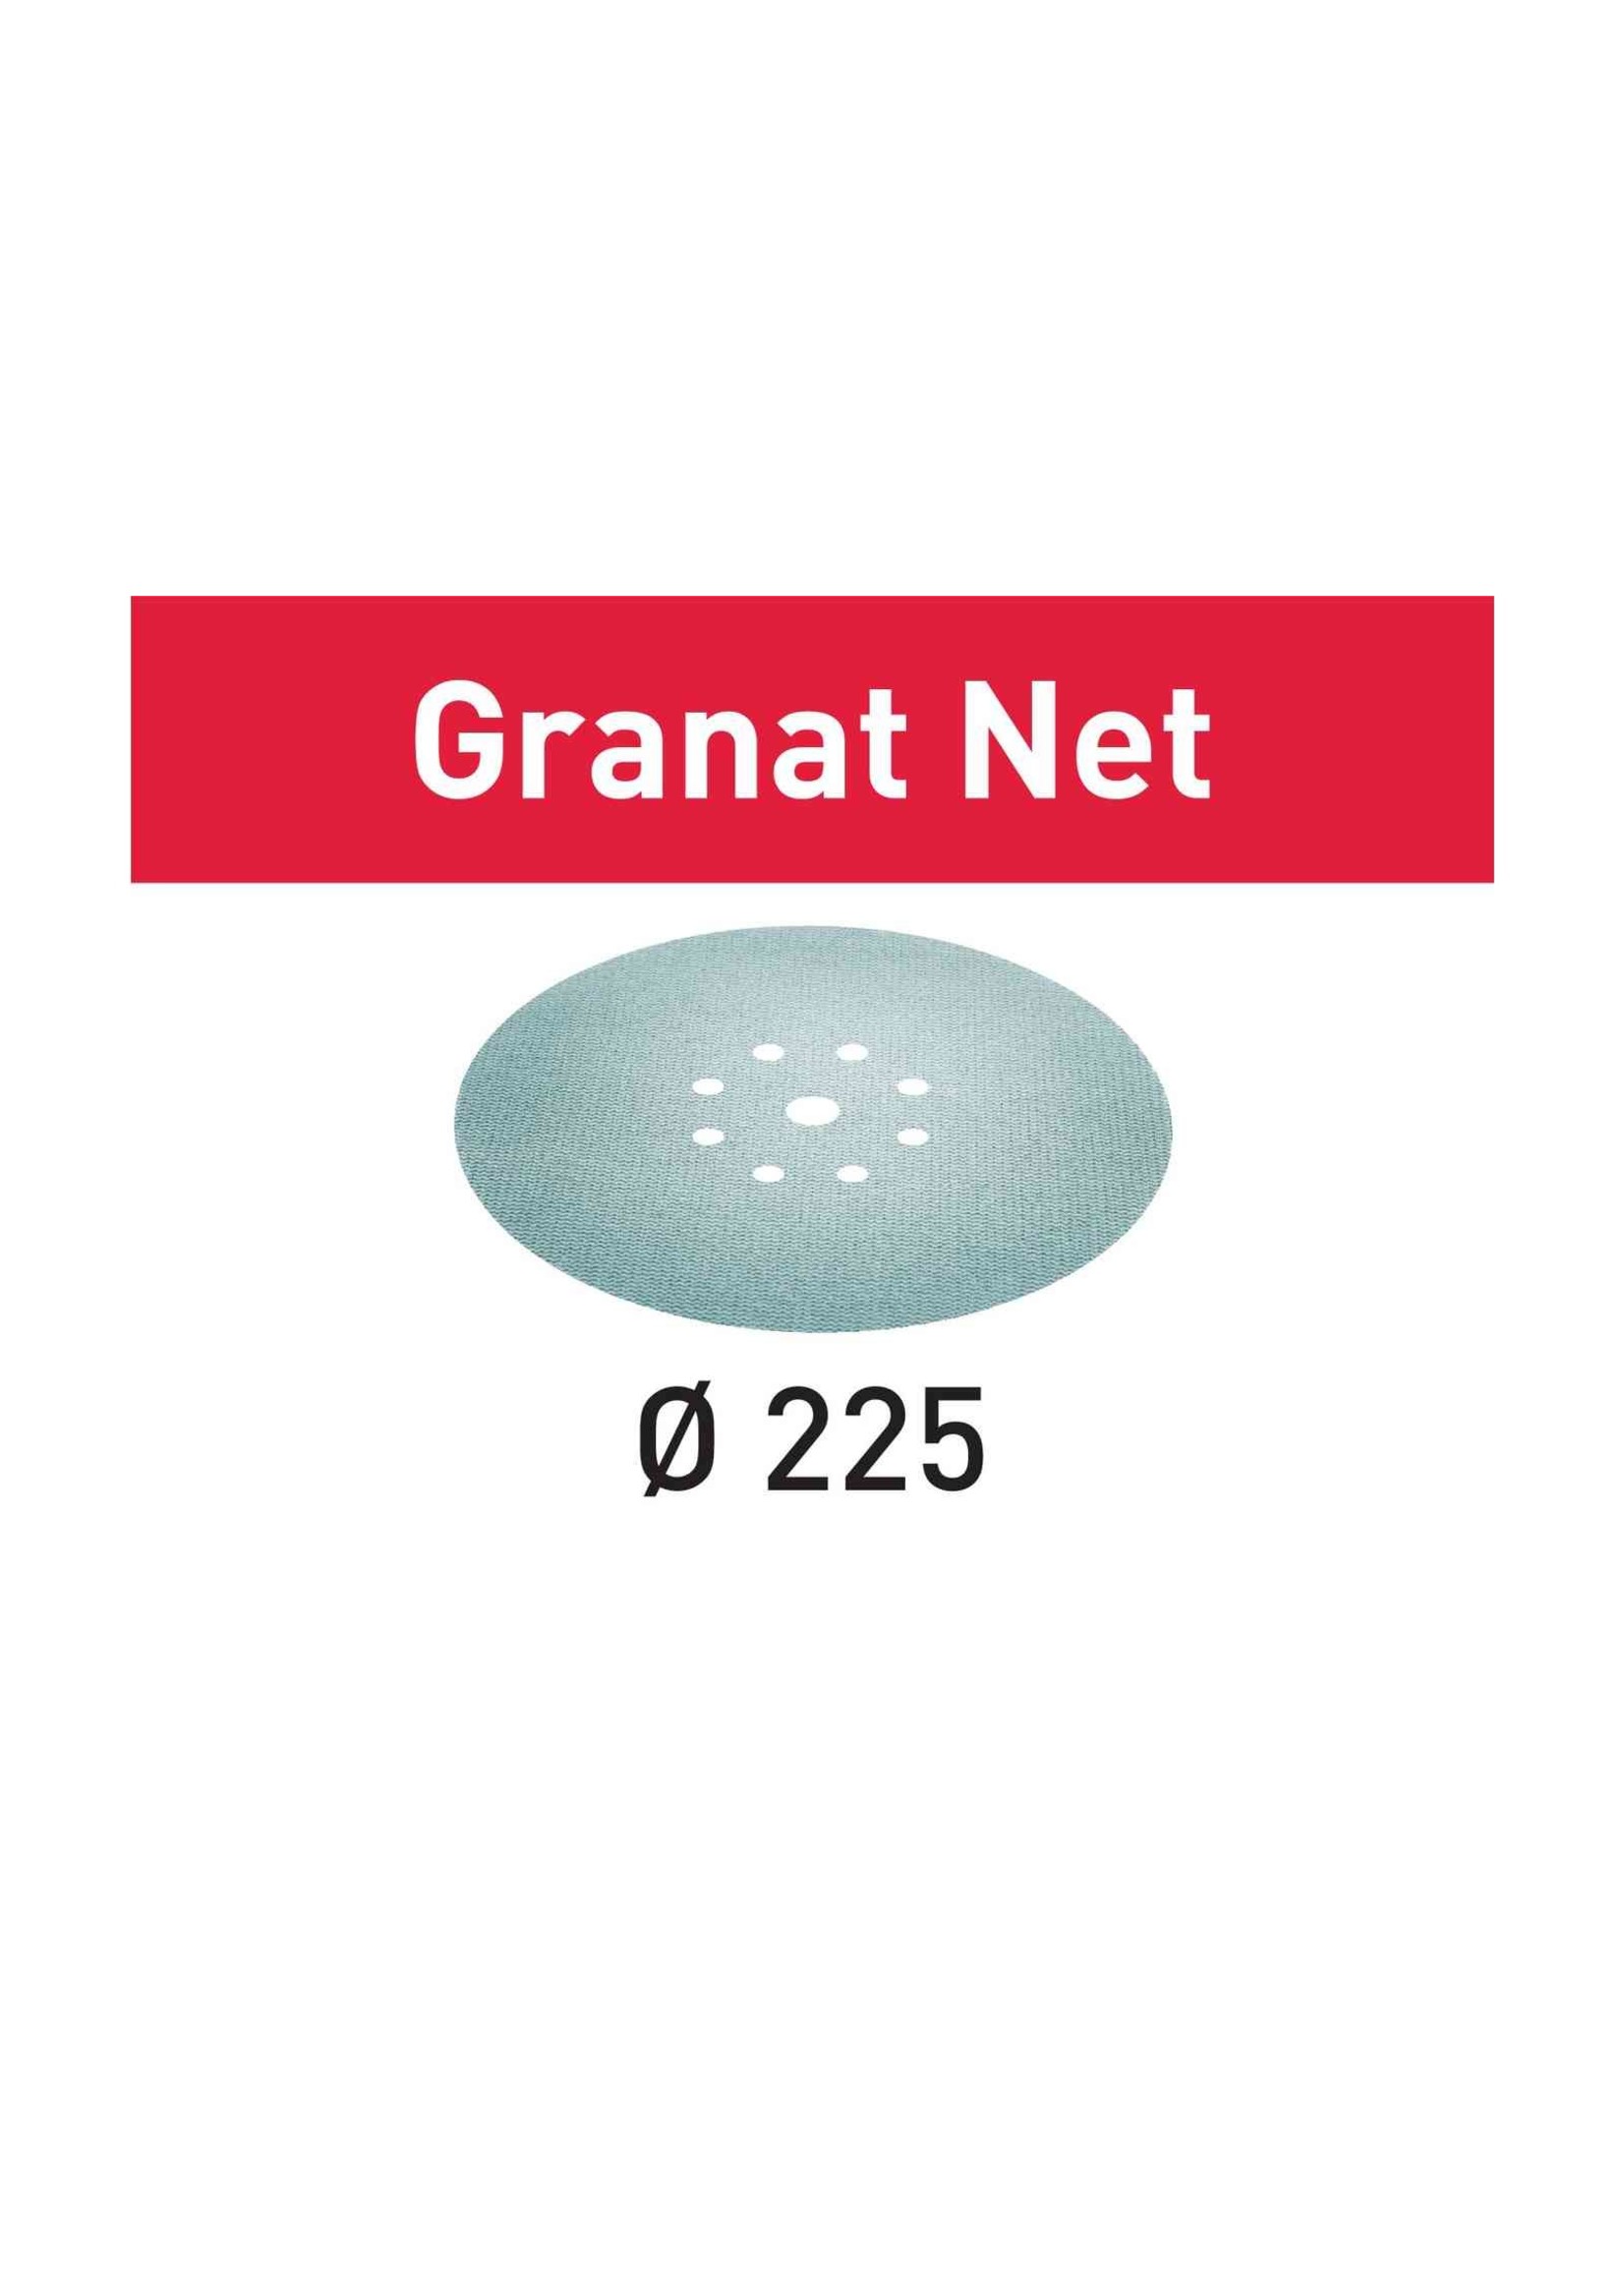 Festool 203316 sanding discs   STF D225 P180 GR NET/25